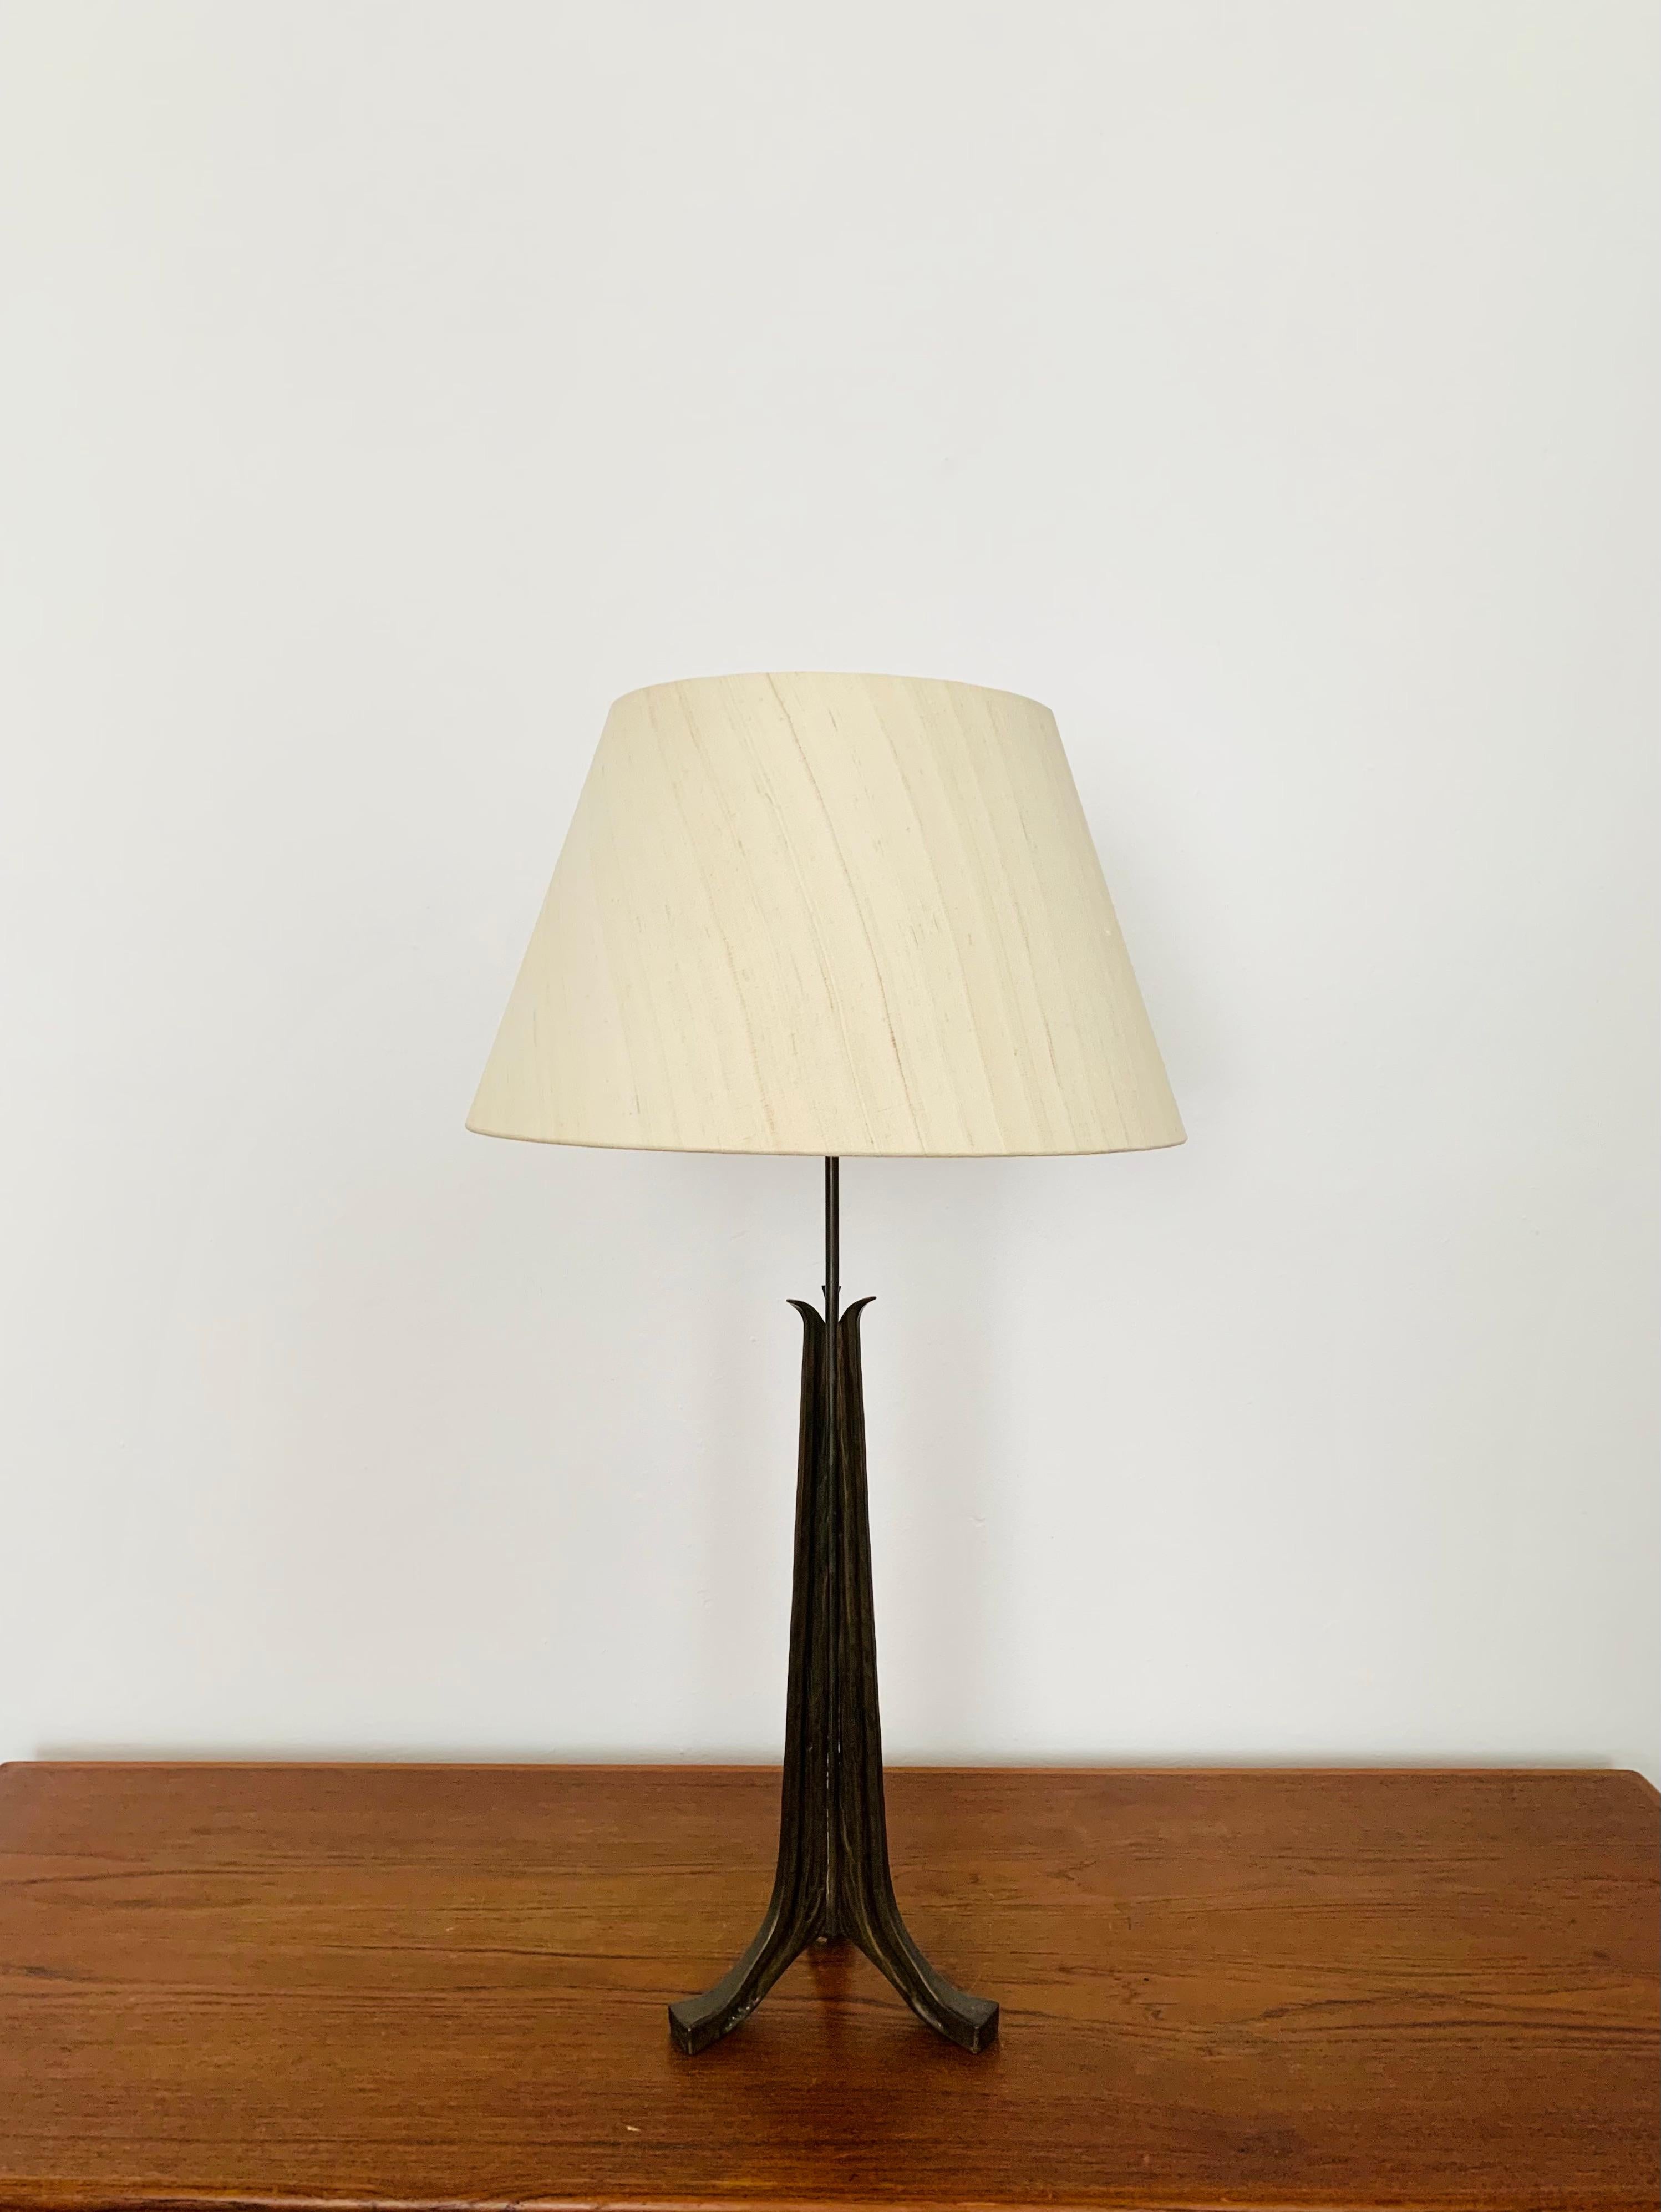 Impressionnante et belle lampe de table brutaliste des années 1960.
La lampe a une finition de très haute qualité.
Un design magnifique et un atout pour toute maison.
Une lumière très noble est créée.

Prises avec interrupteur à tirette et